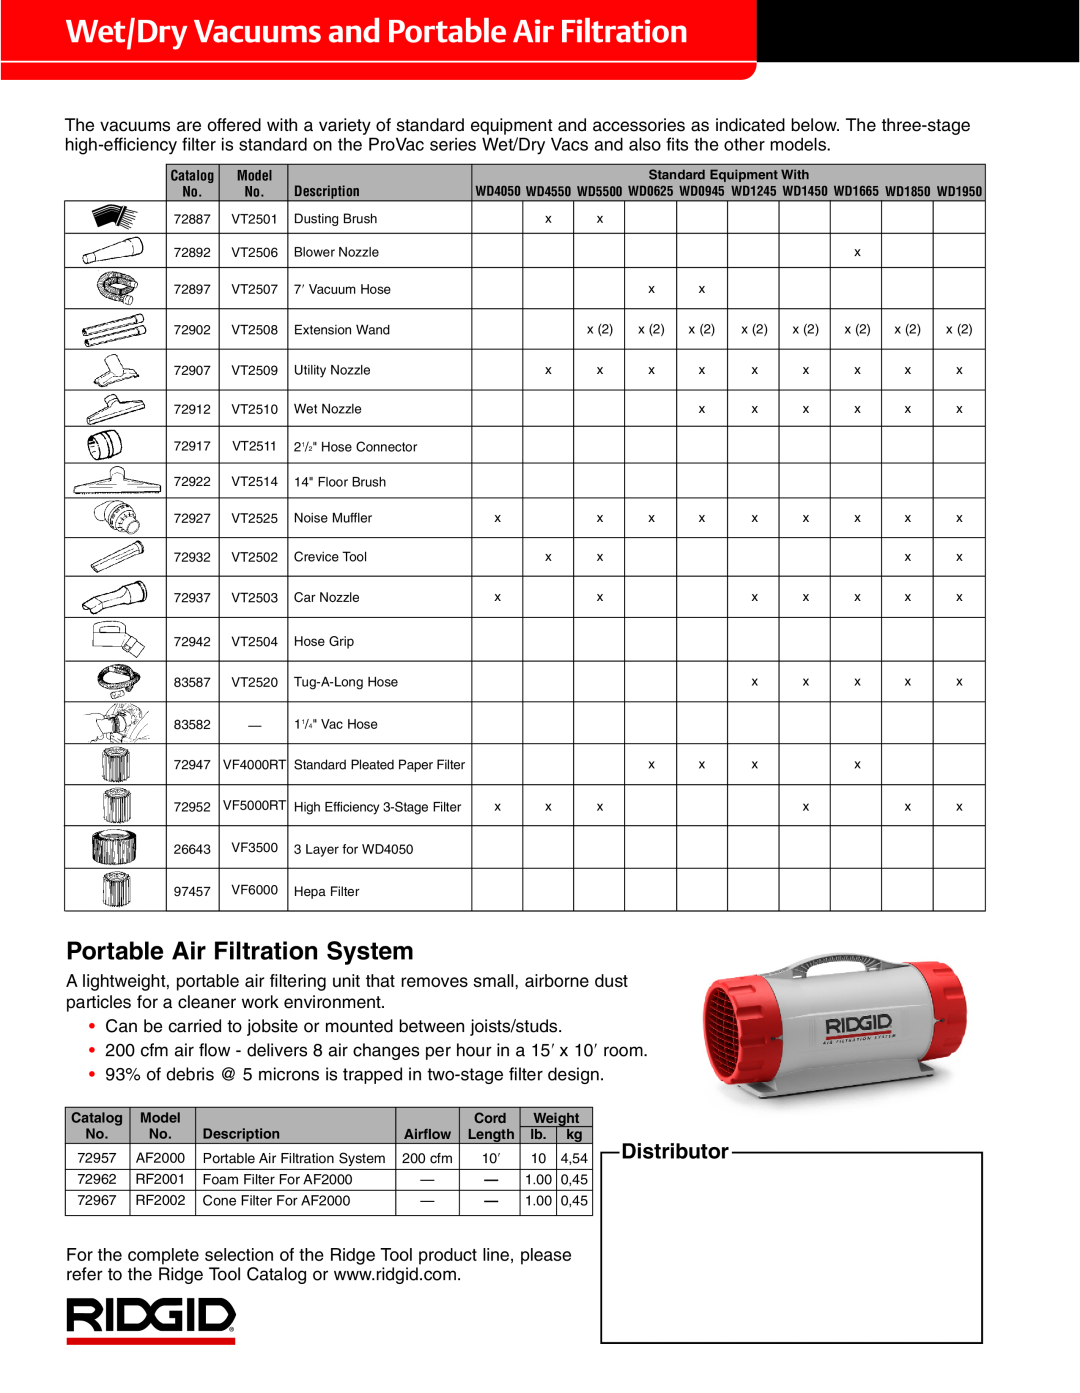 RIDGID RV2400A, RV2600B, VP2000 Wet/Dry Vacuums and Portable Air Filtration, Portable Air Filtration System, Distributor 